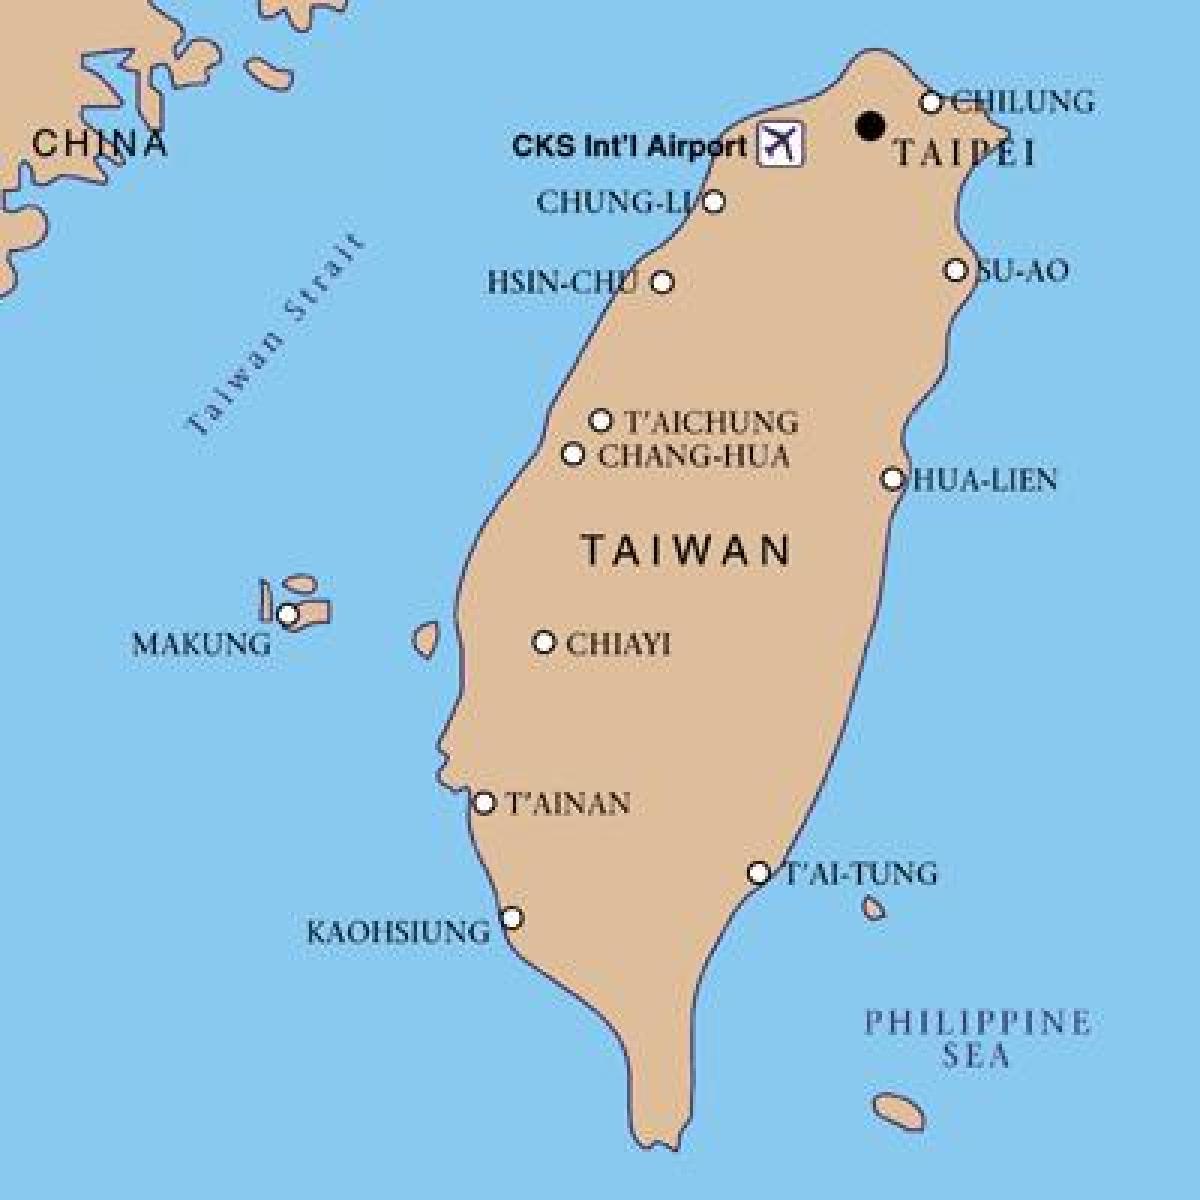 Taiwan 국제 공항 지도